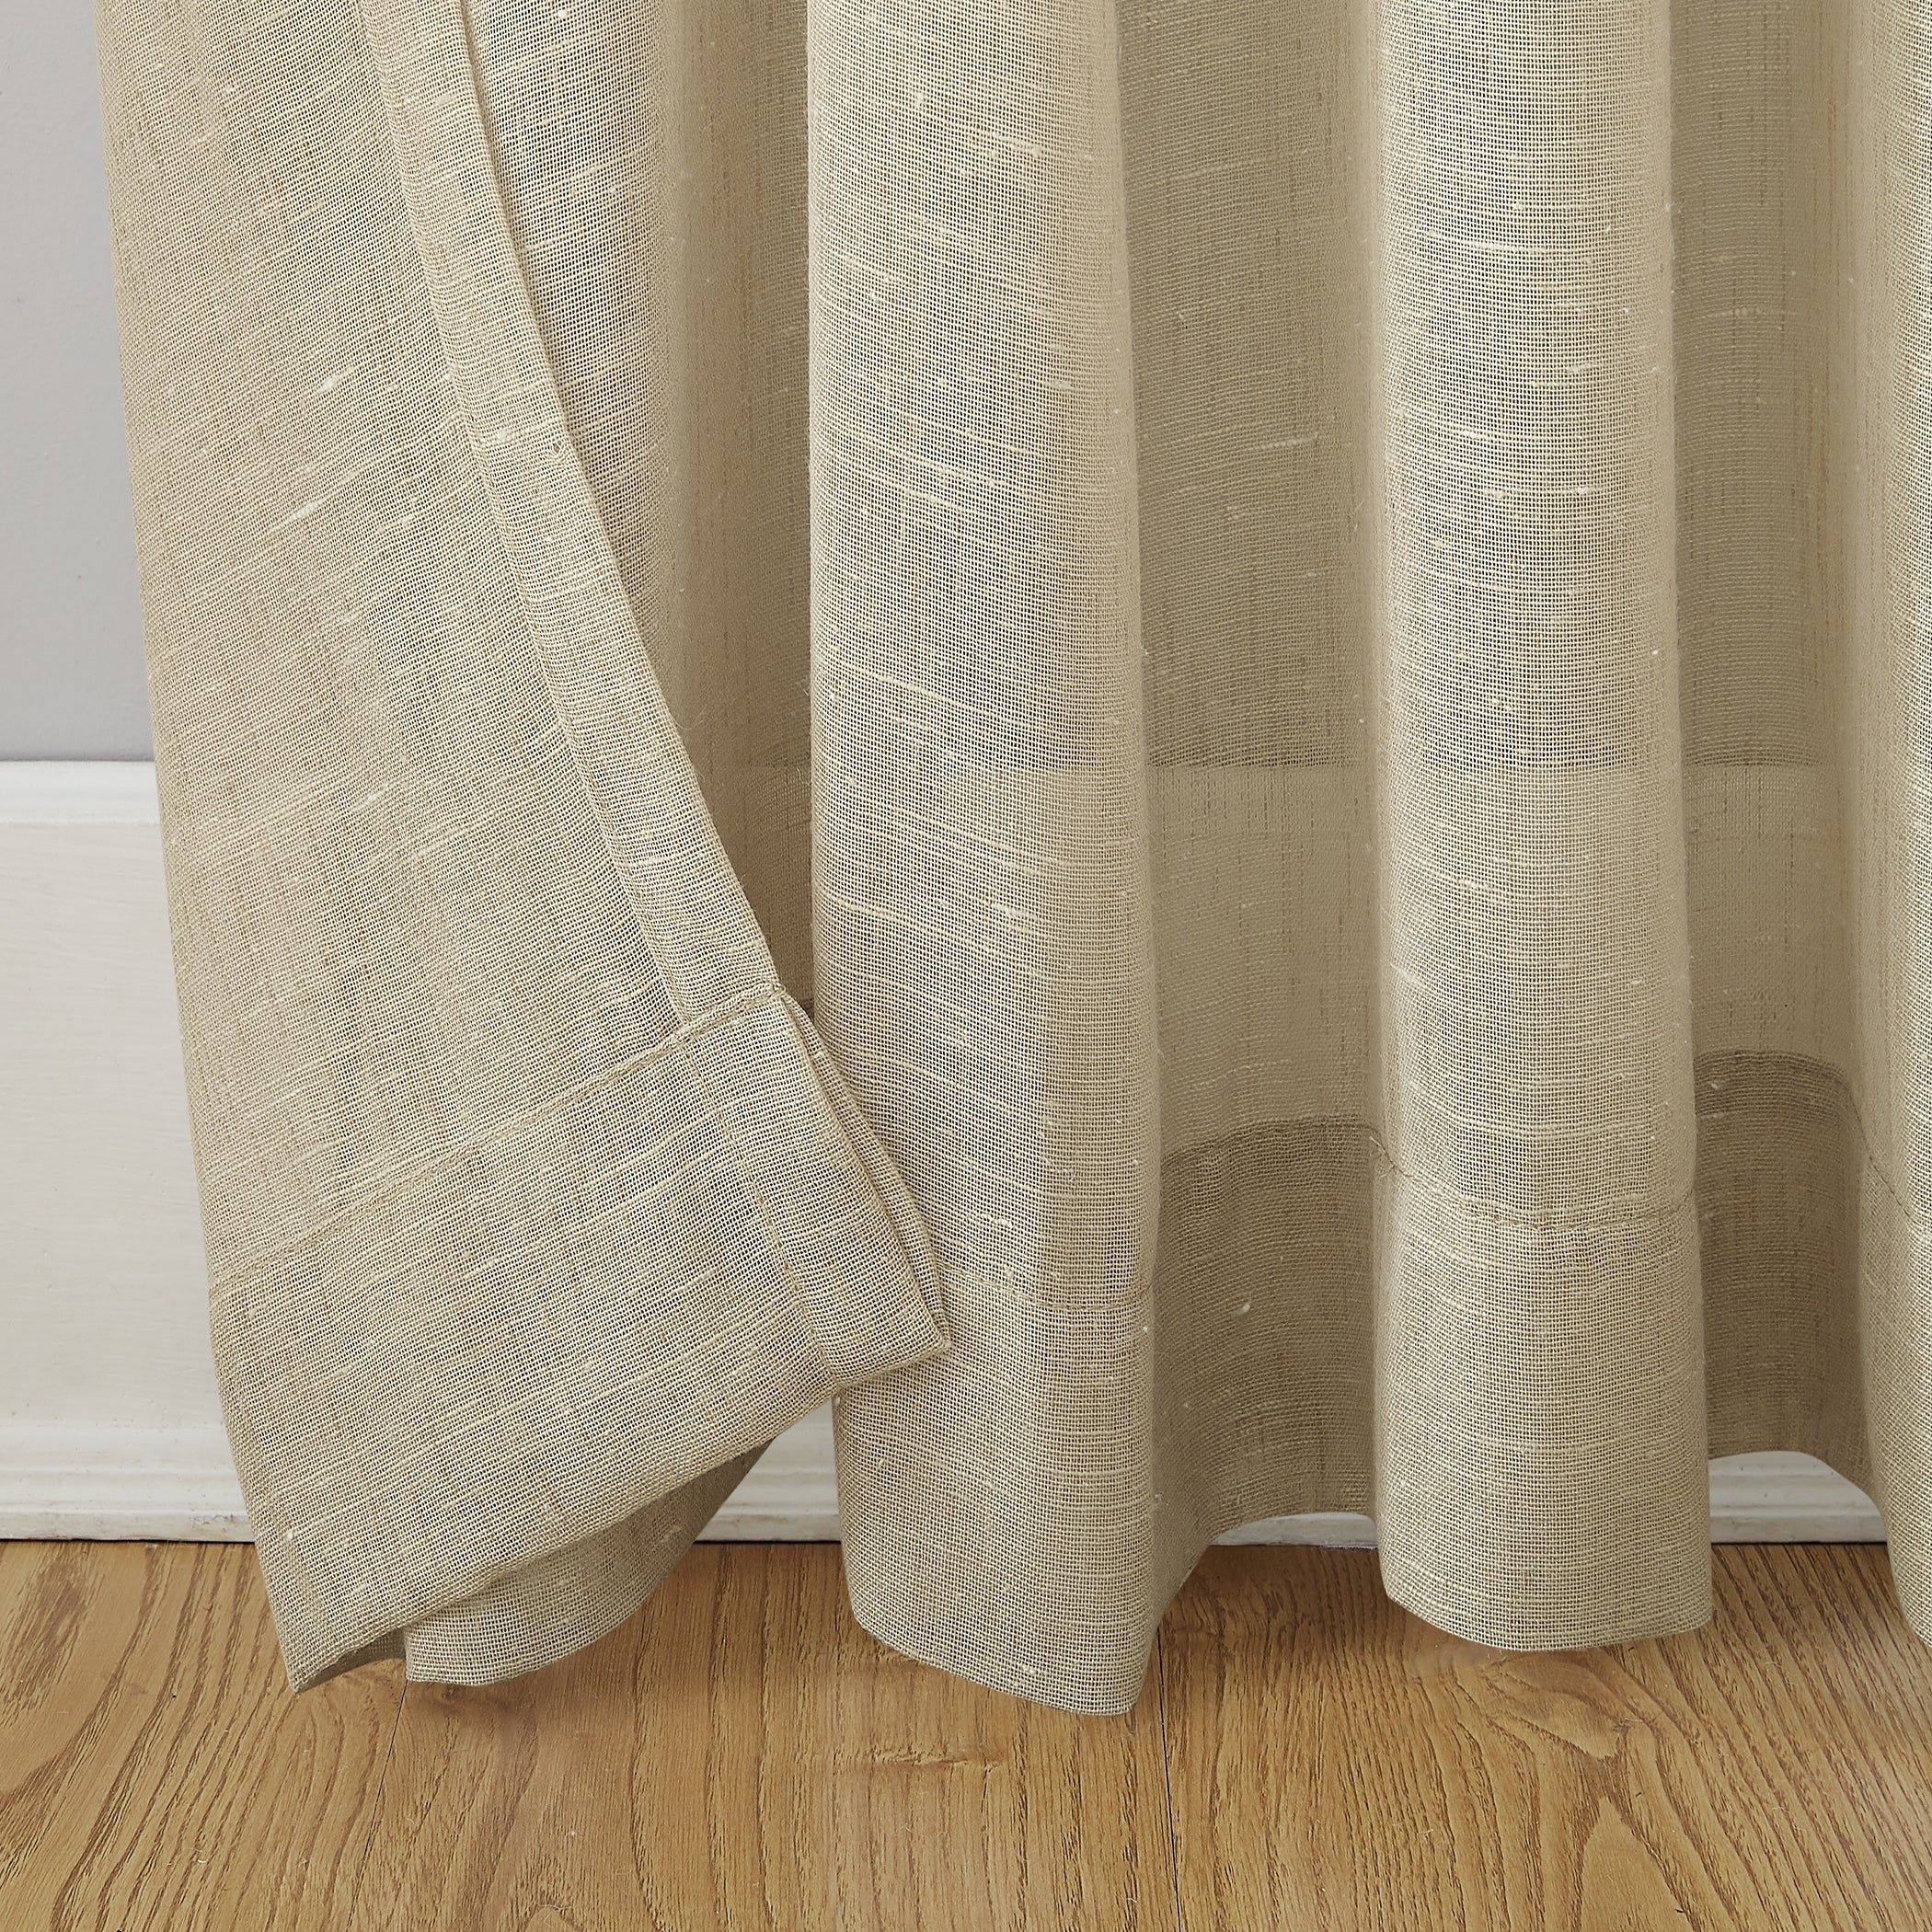 Archaeo Slub Textured Linen Blend Grommet Top Curtain With Regard To Archaeo Slub Textured Linen Blend Grommet Top Curtains (Photo 3 of 20)